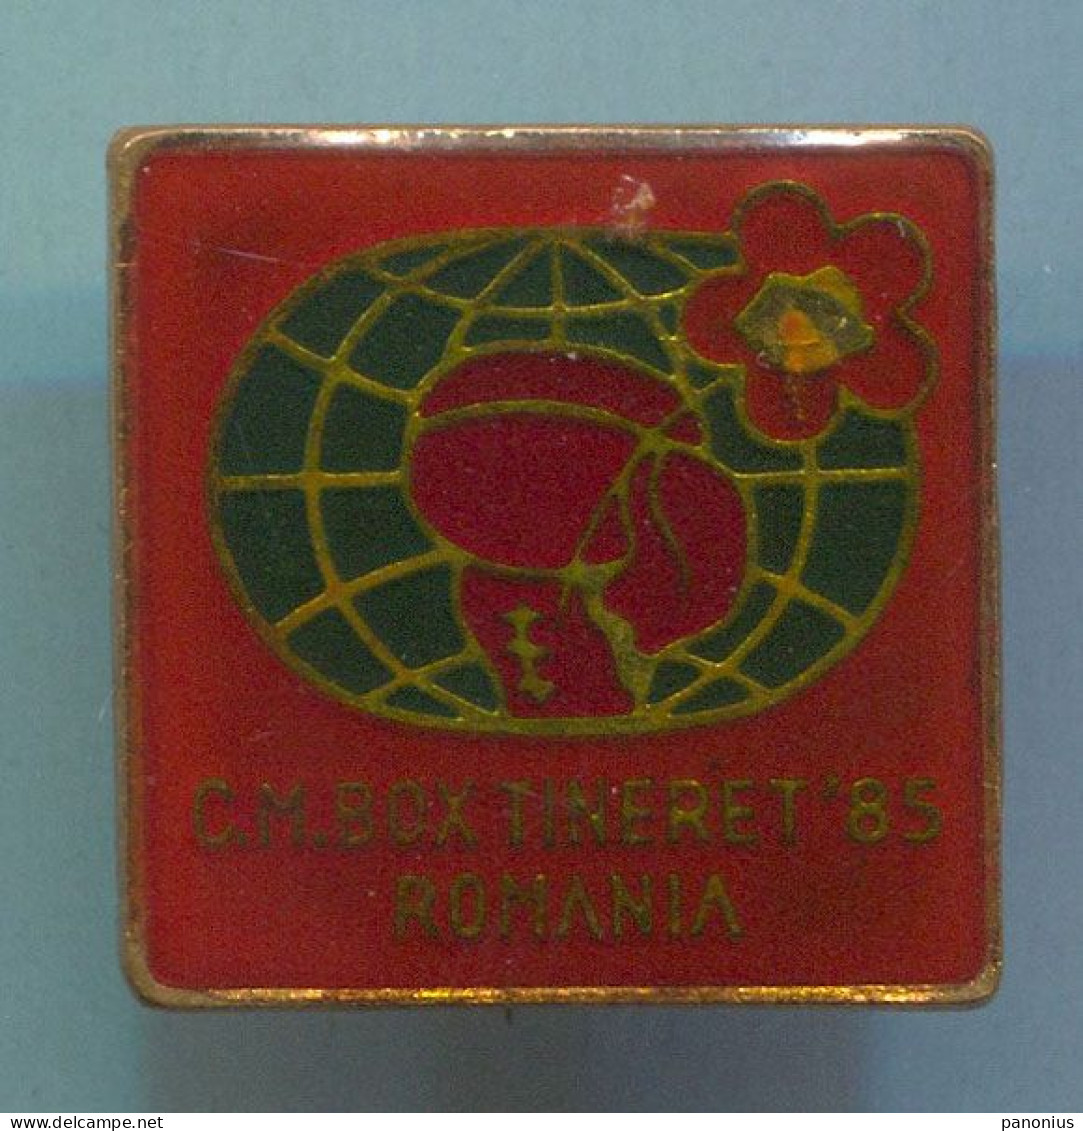 Boxing Box Boxe Pugilato - Junior Championship 1985, Romania, Vintage Pin, Badge, Abzeichen - Boxeo